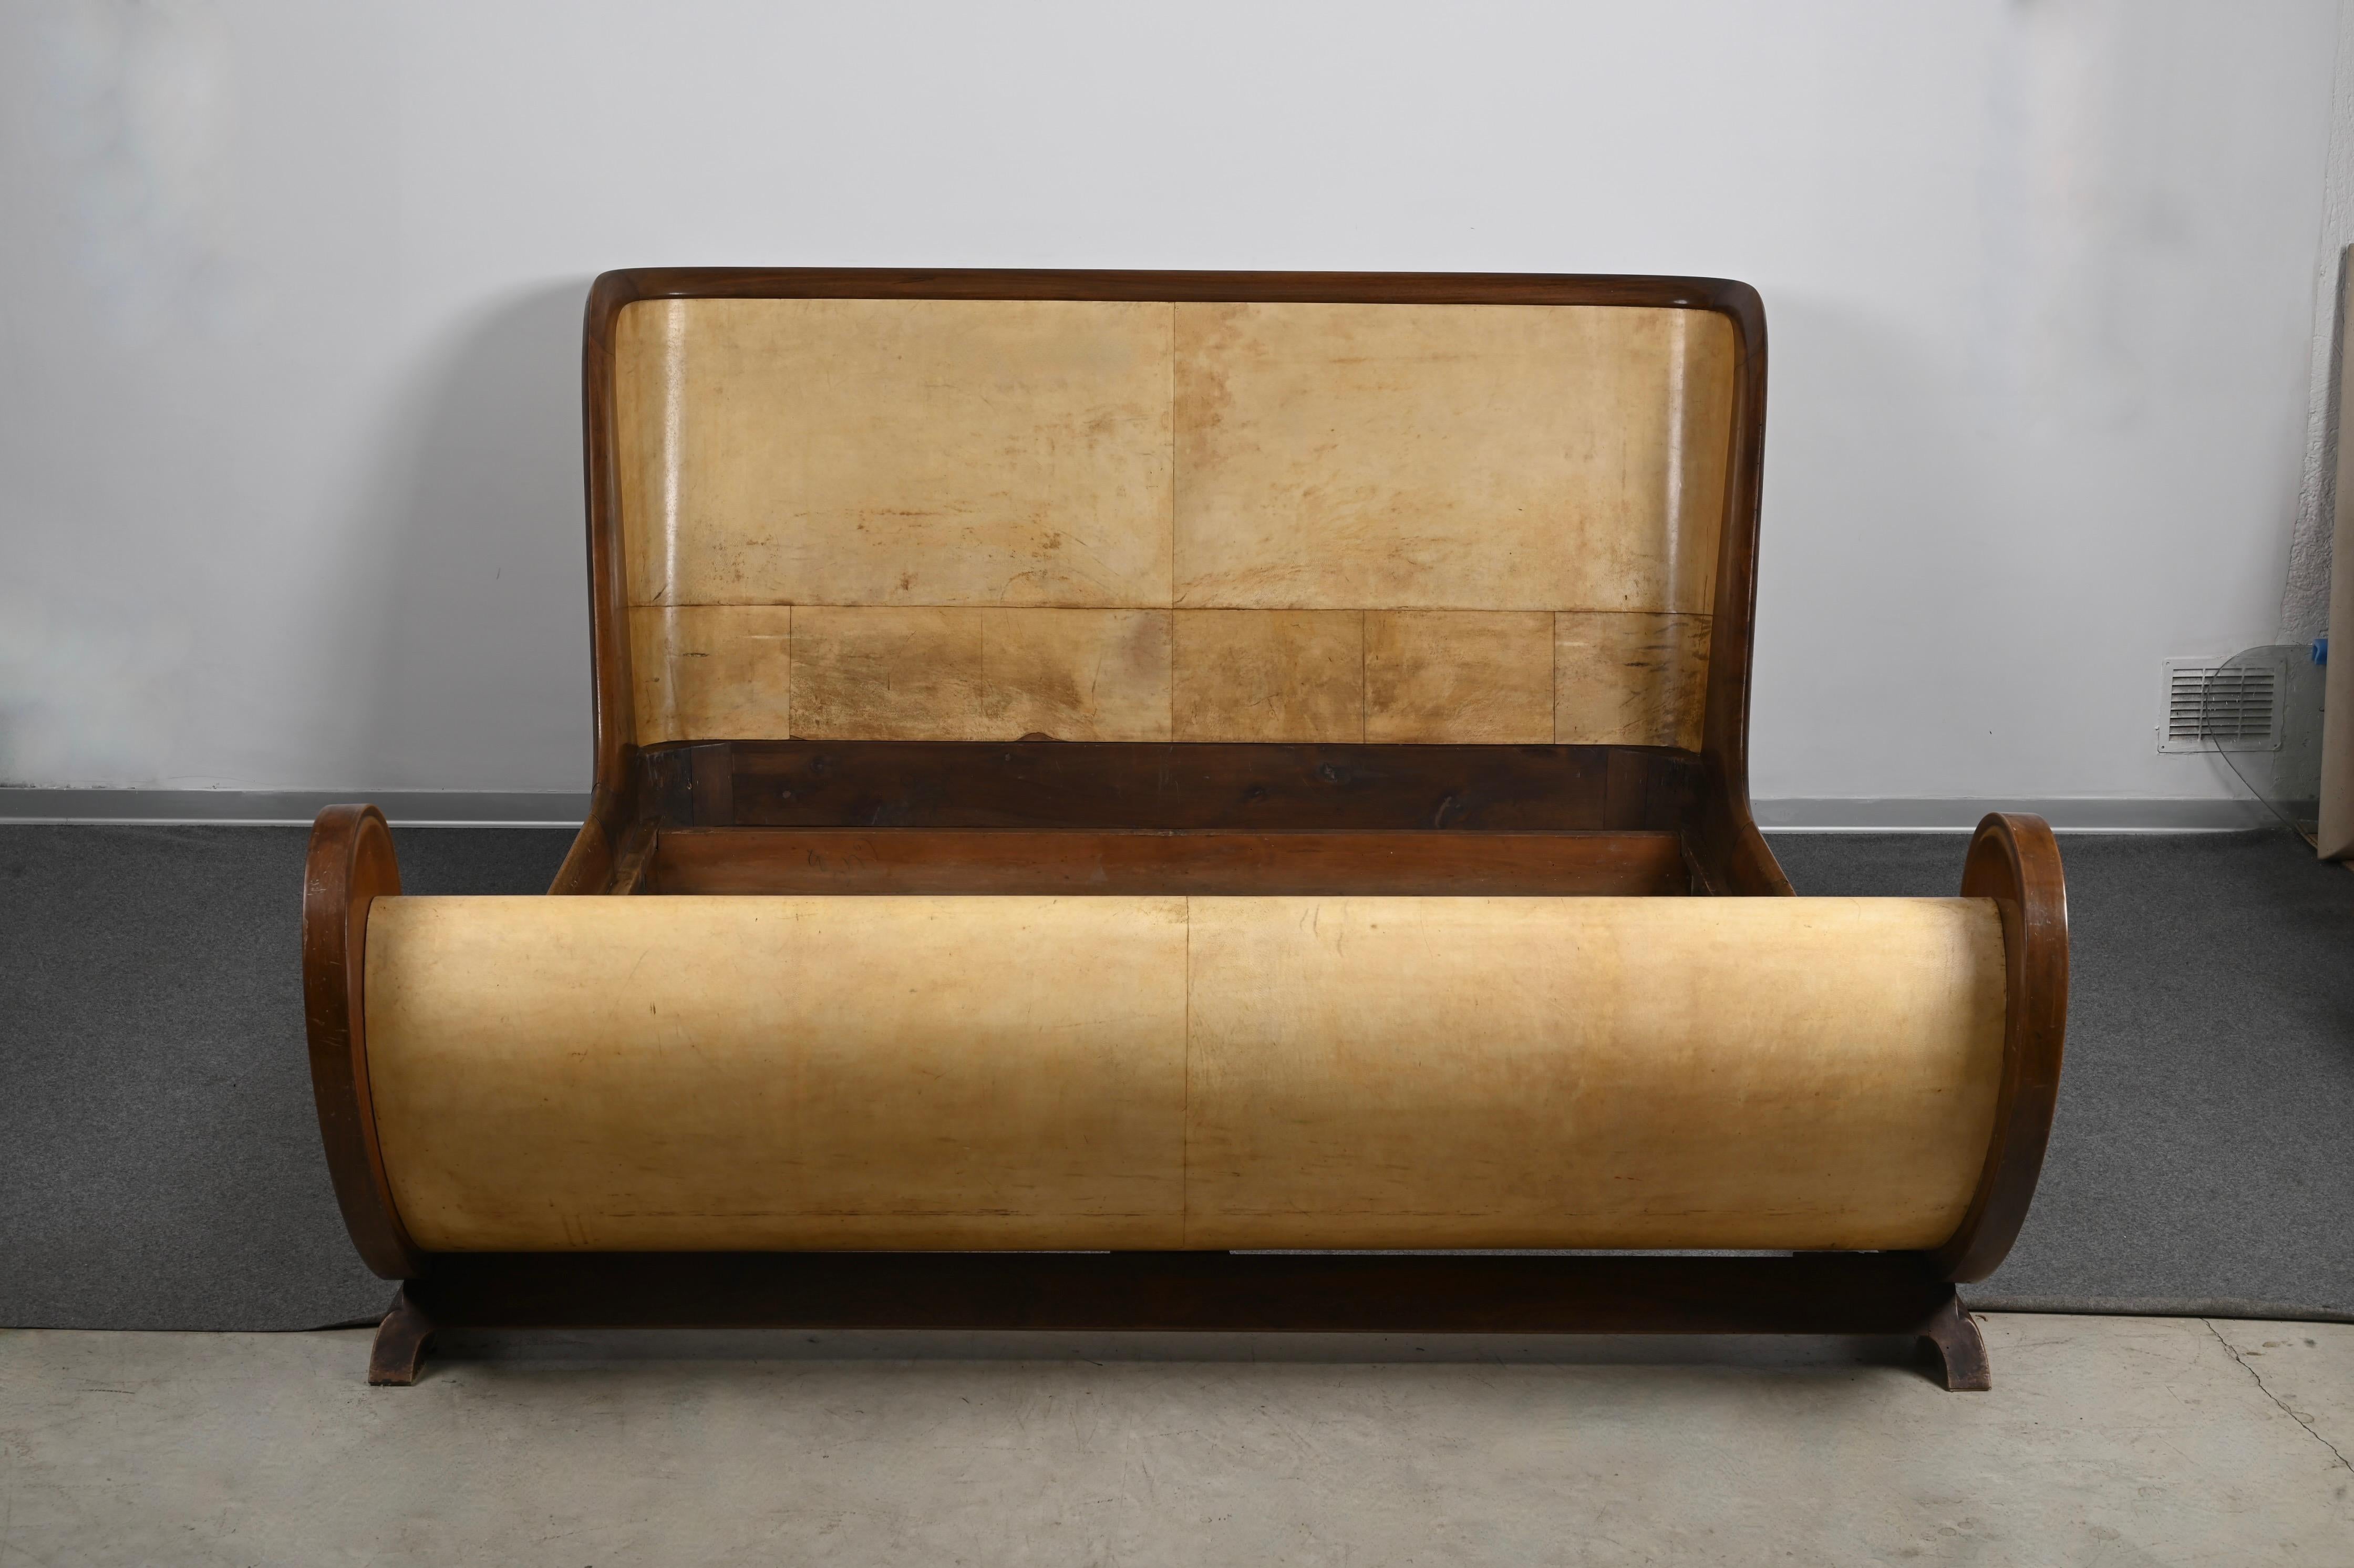 Unglaubliches Bett aus Pergament und Holz, hergestellt in Italien in den 30er Jahren und signiert Valzania Italia.

Aufgrund der geschwungenen Linien, des Art-Déco-Designs und der geschickten Kombination von Materialien wird dieses unglaubliche